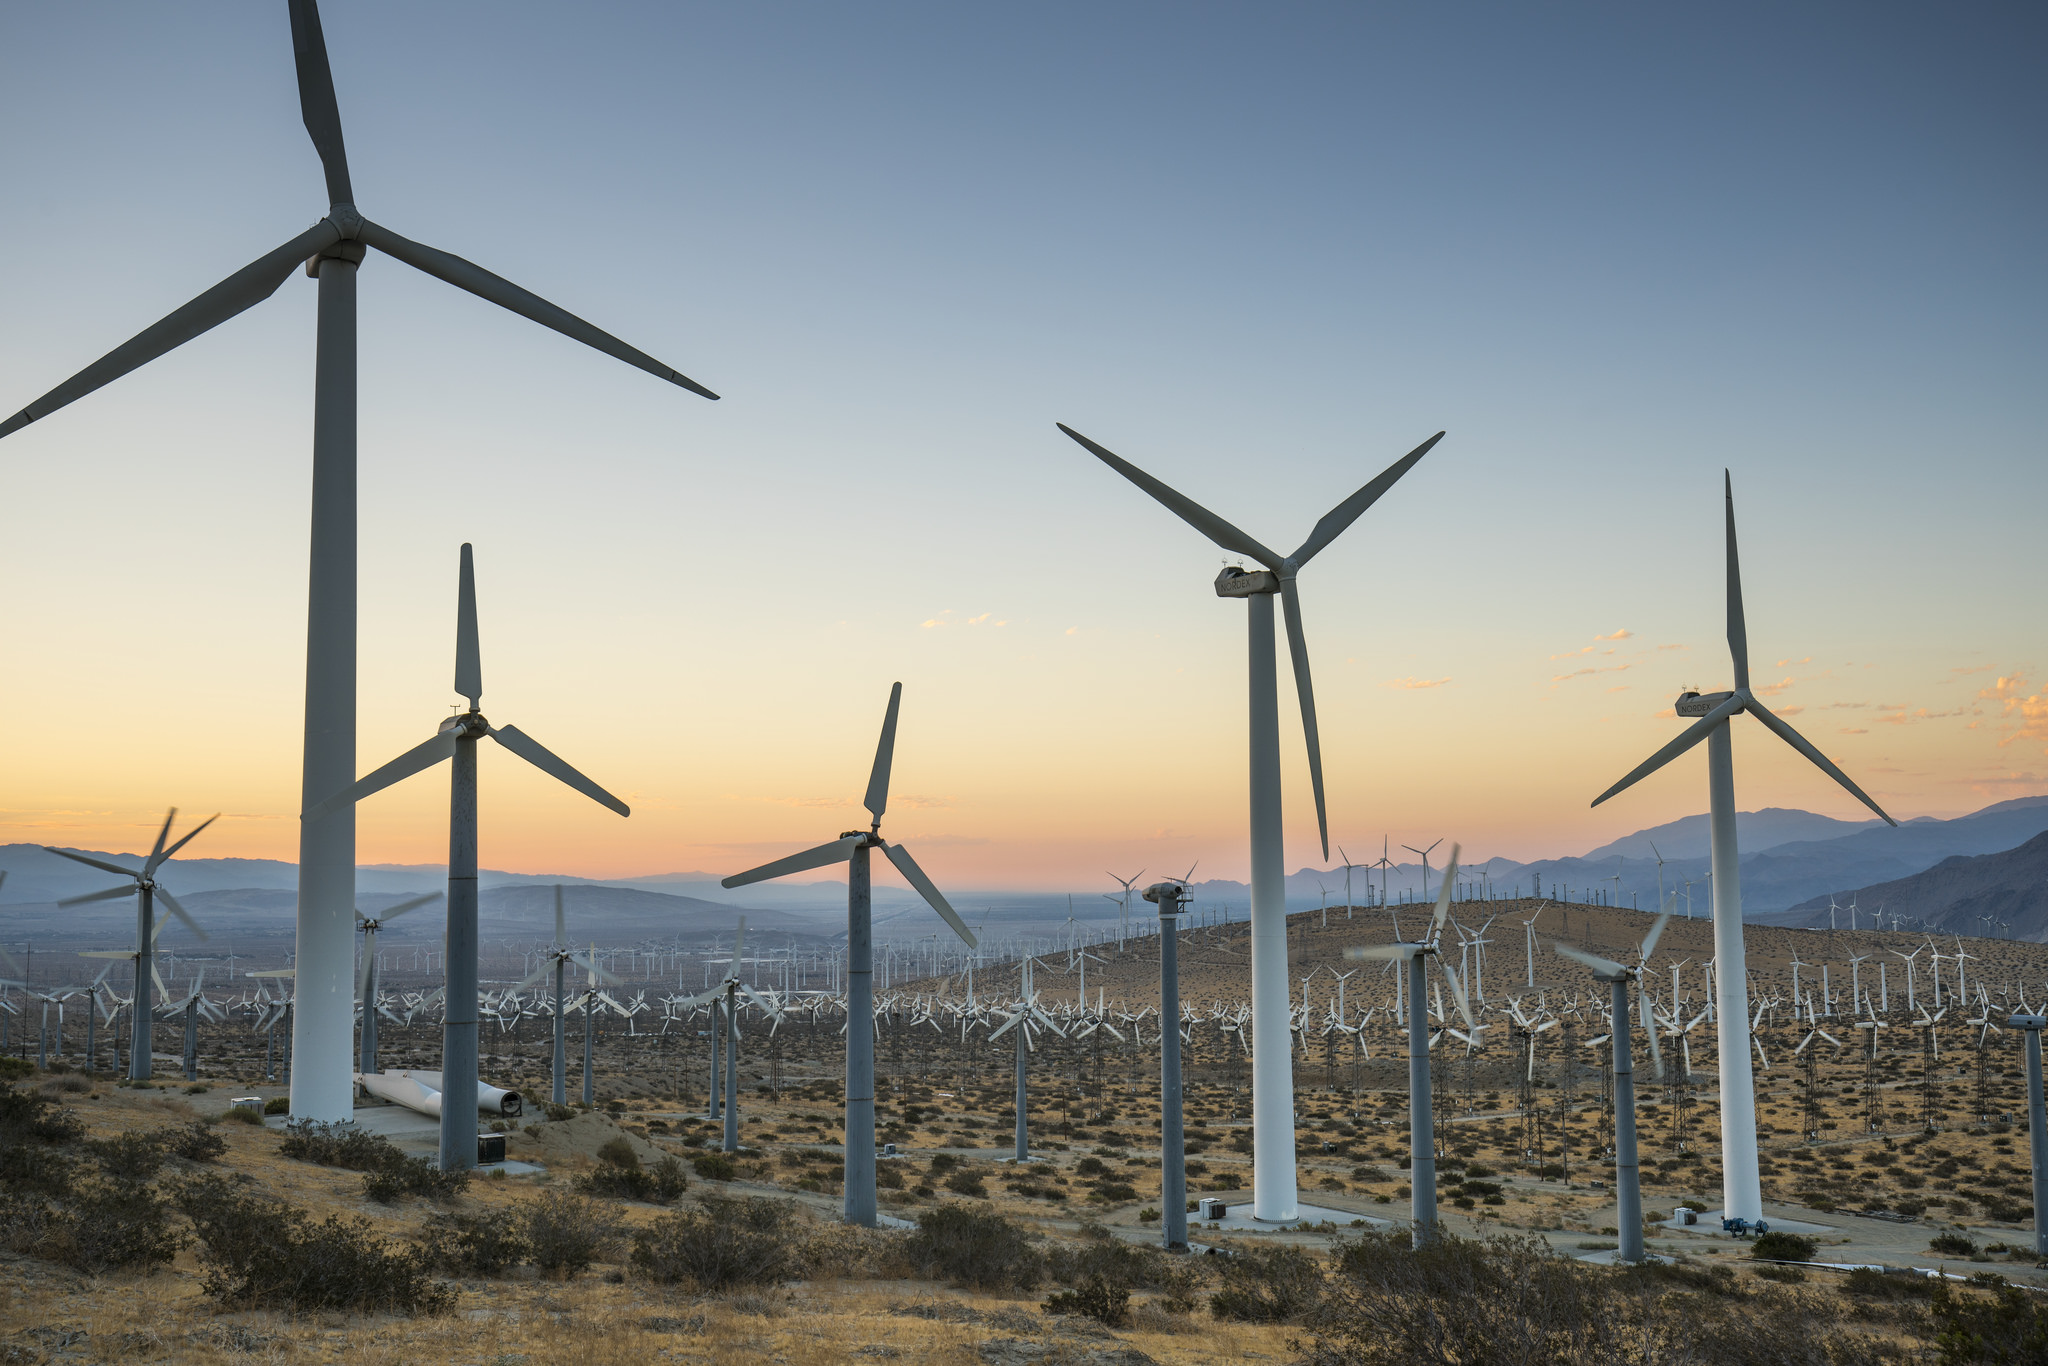 field of wind turbines in the desert